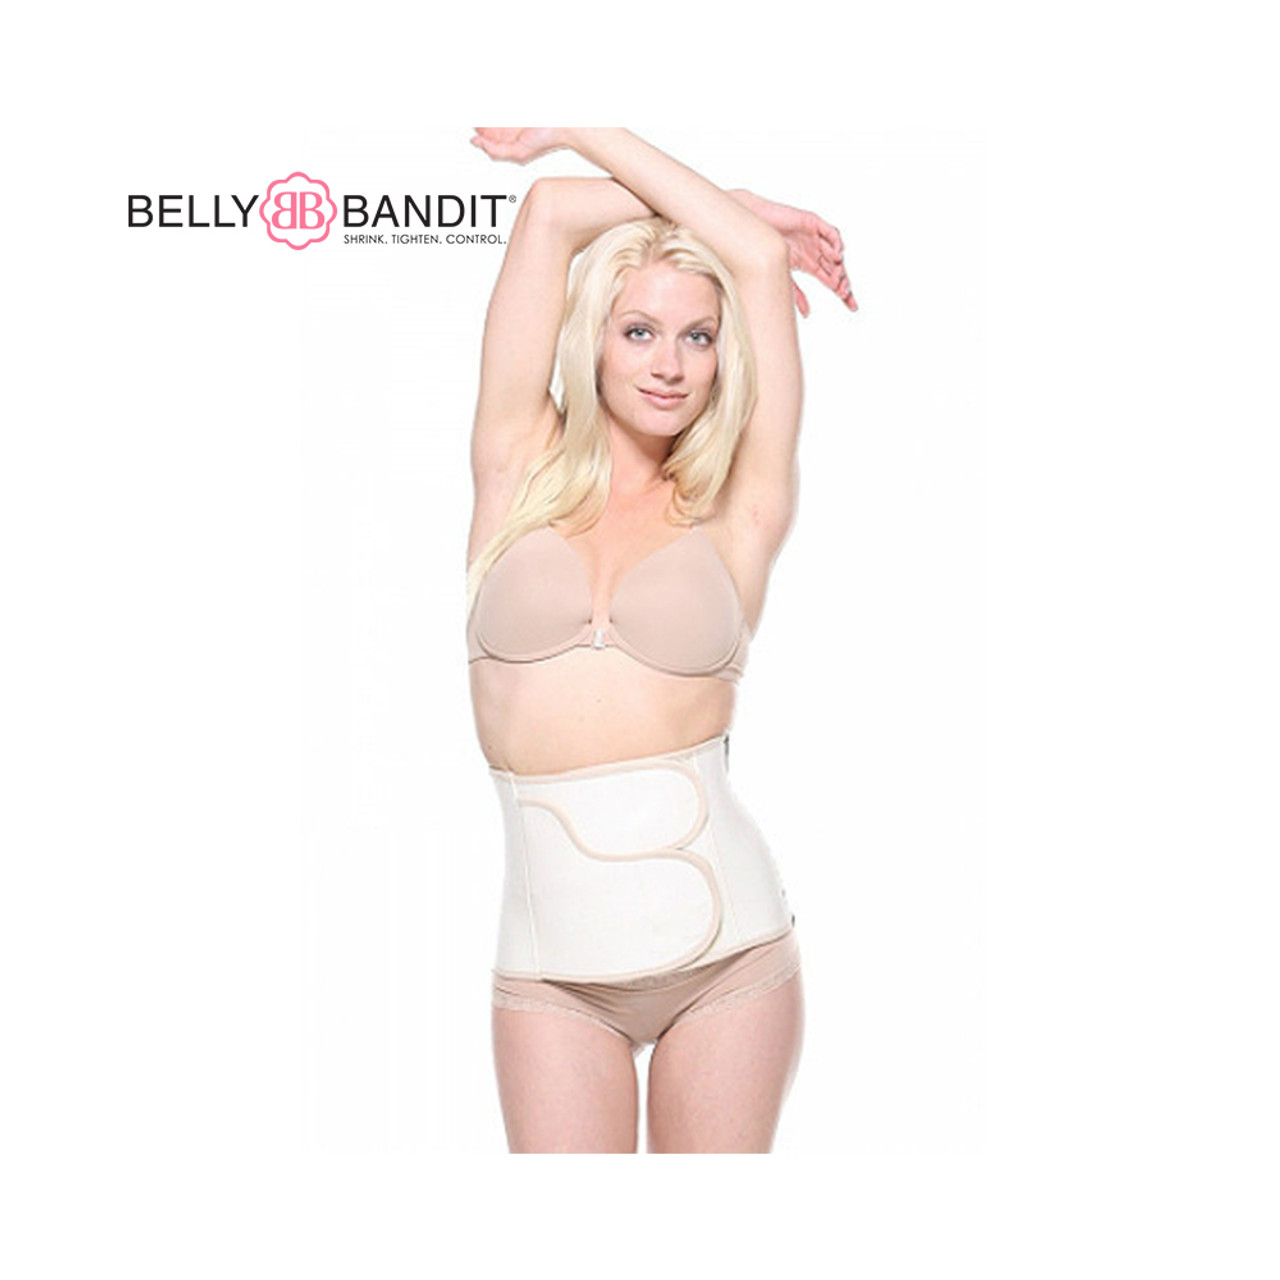 Postpartum Leggings & Tights for Sale Online – Belly Bandit ®